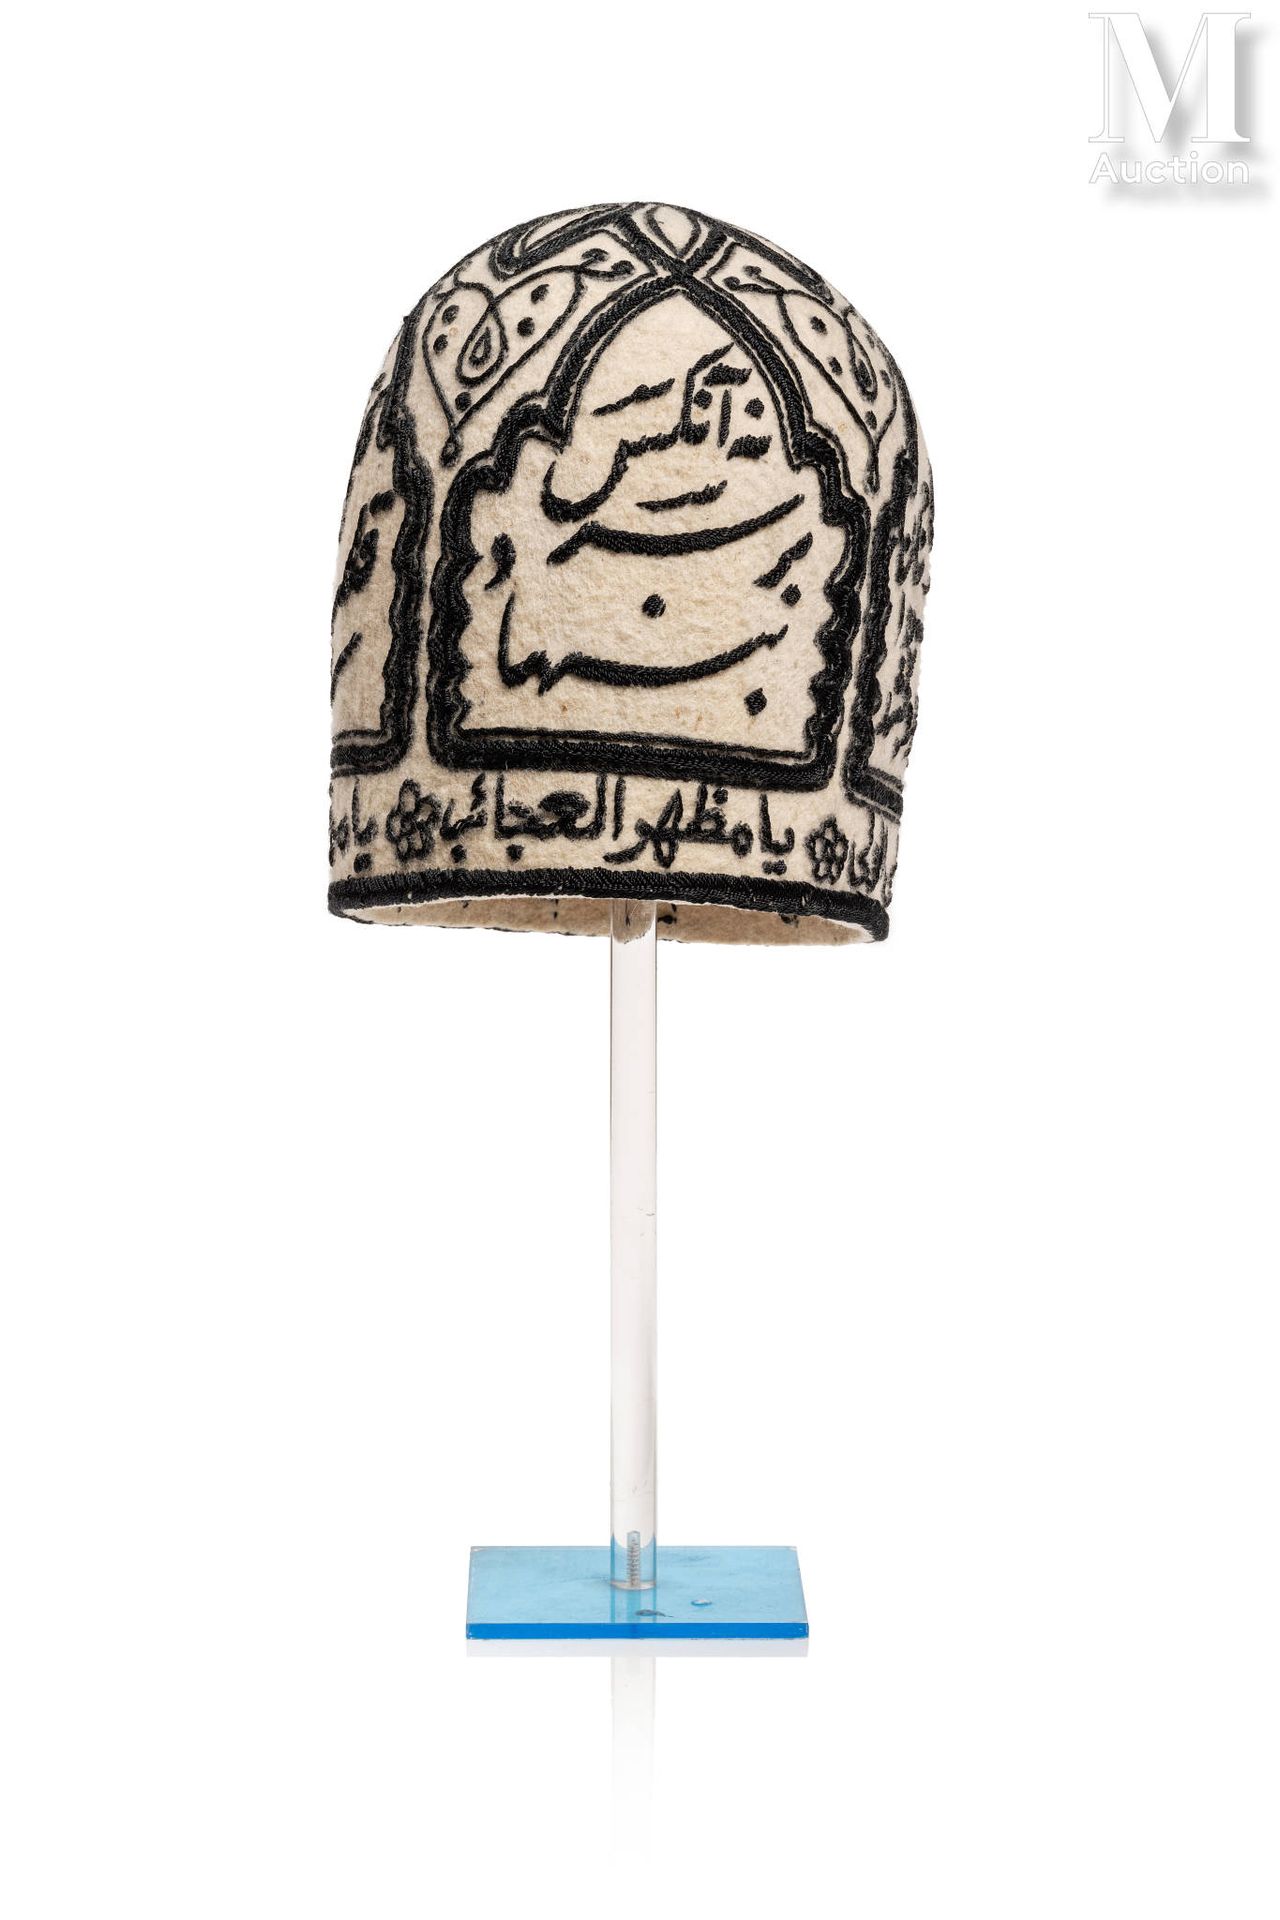 Bonnet de Derviche Iran

Una borsa di lana ricamata con feltro nero, decorata co&hellip;